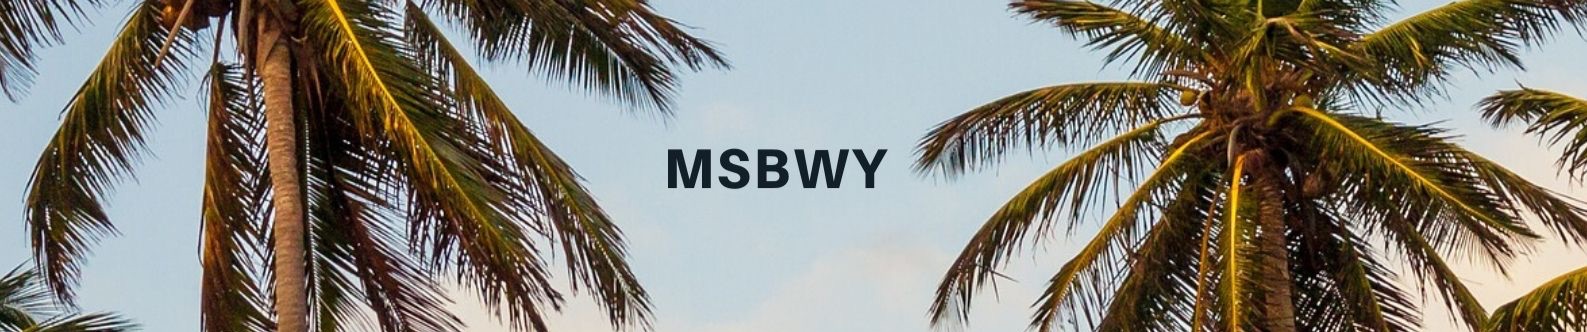 msbwy banner